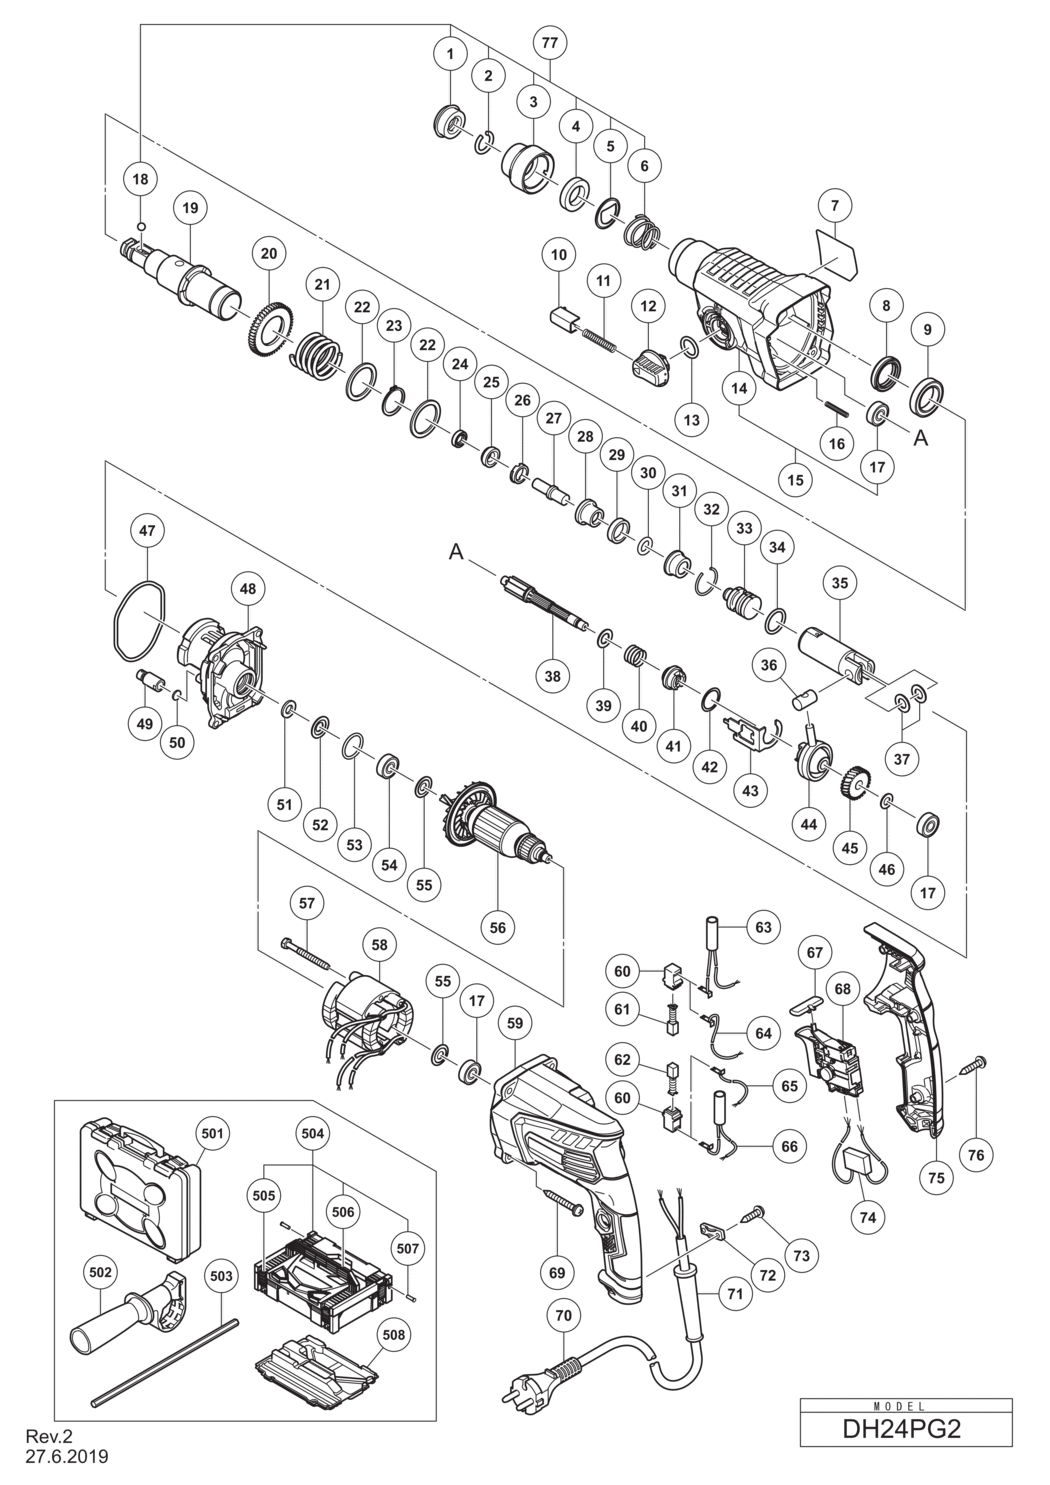 Hitachi / Hikoki DH24PG2 Rotary Hammer Spare Parts